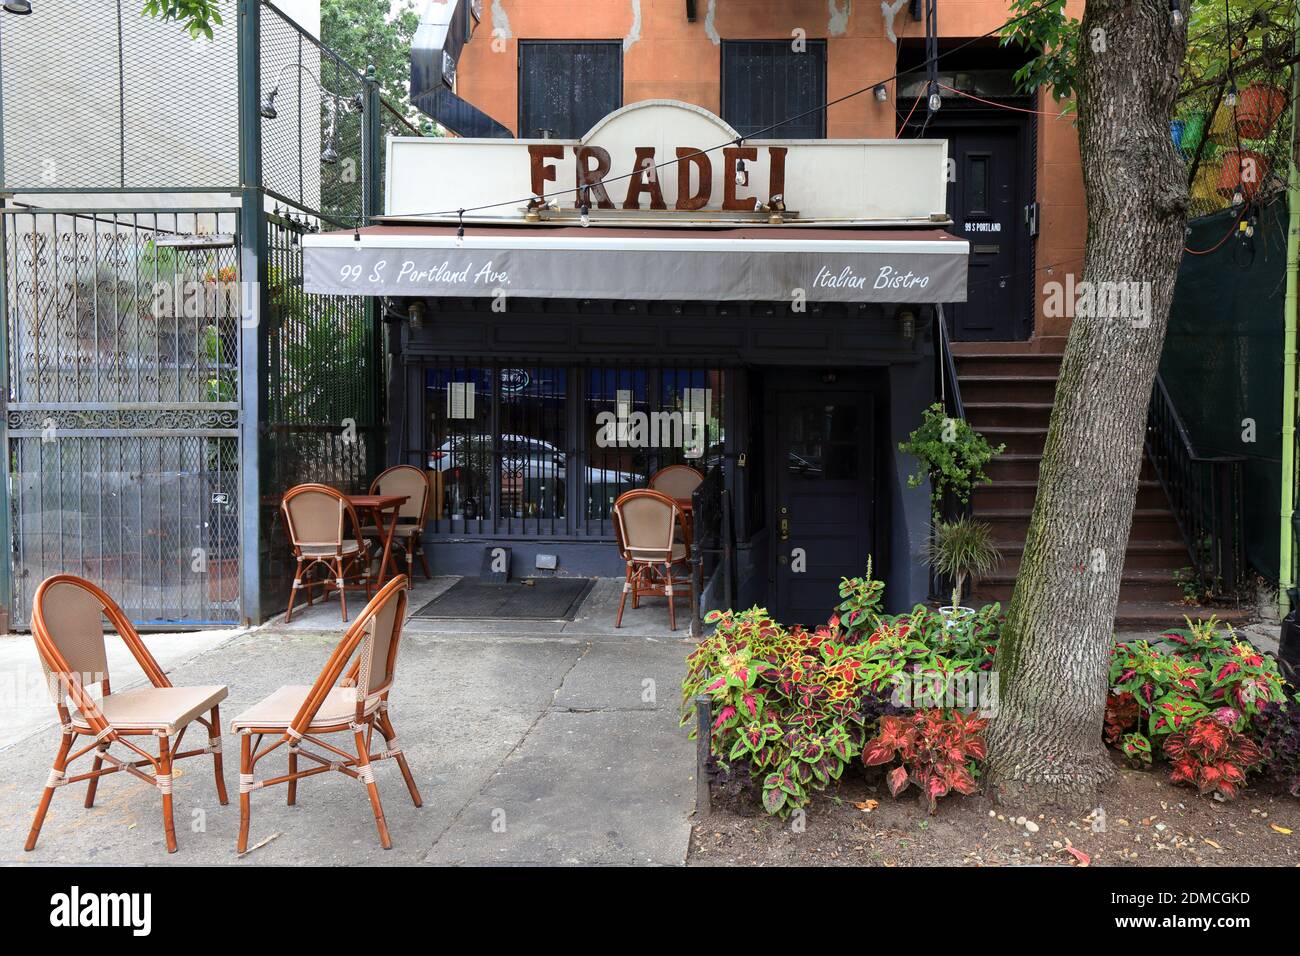 Fradei Bistro, 99 S Portland Ave, Brooklyn, NY. Außenfassade eines italienischen Restaurants im Viertel Fort Greene. Stockfoto